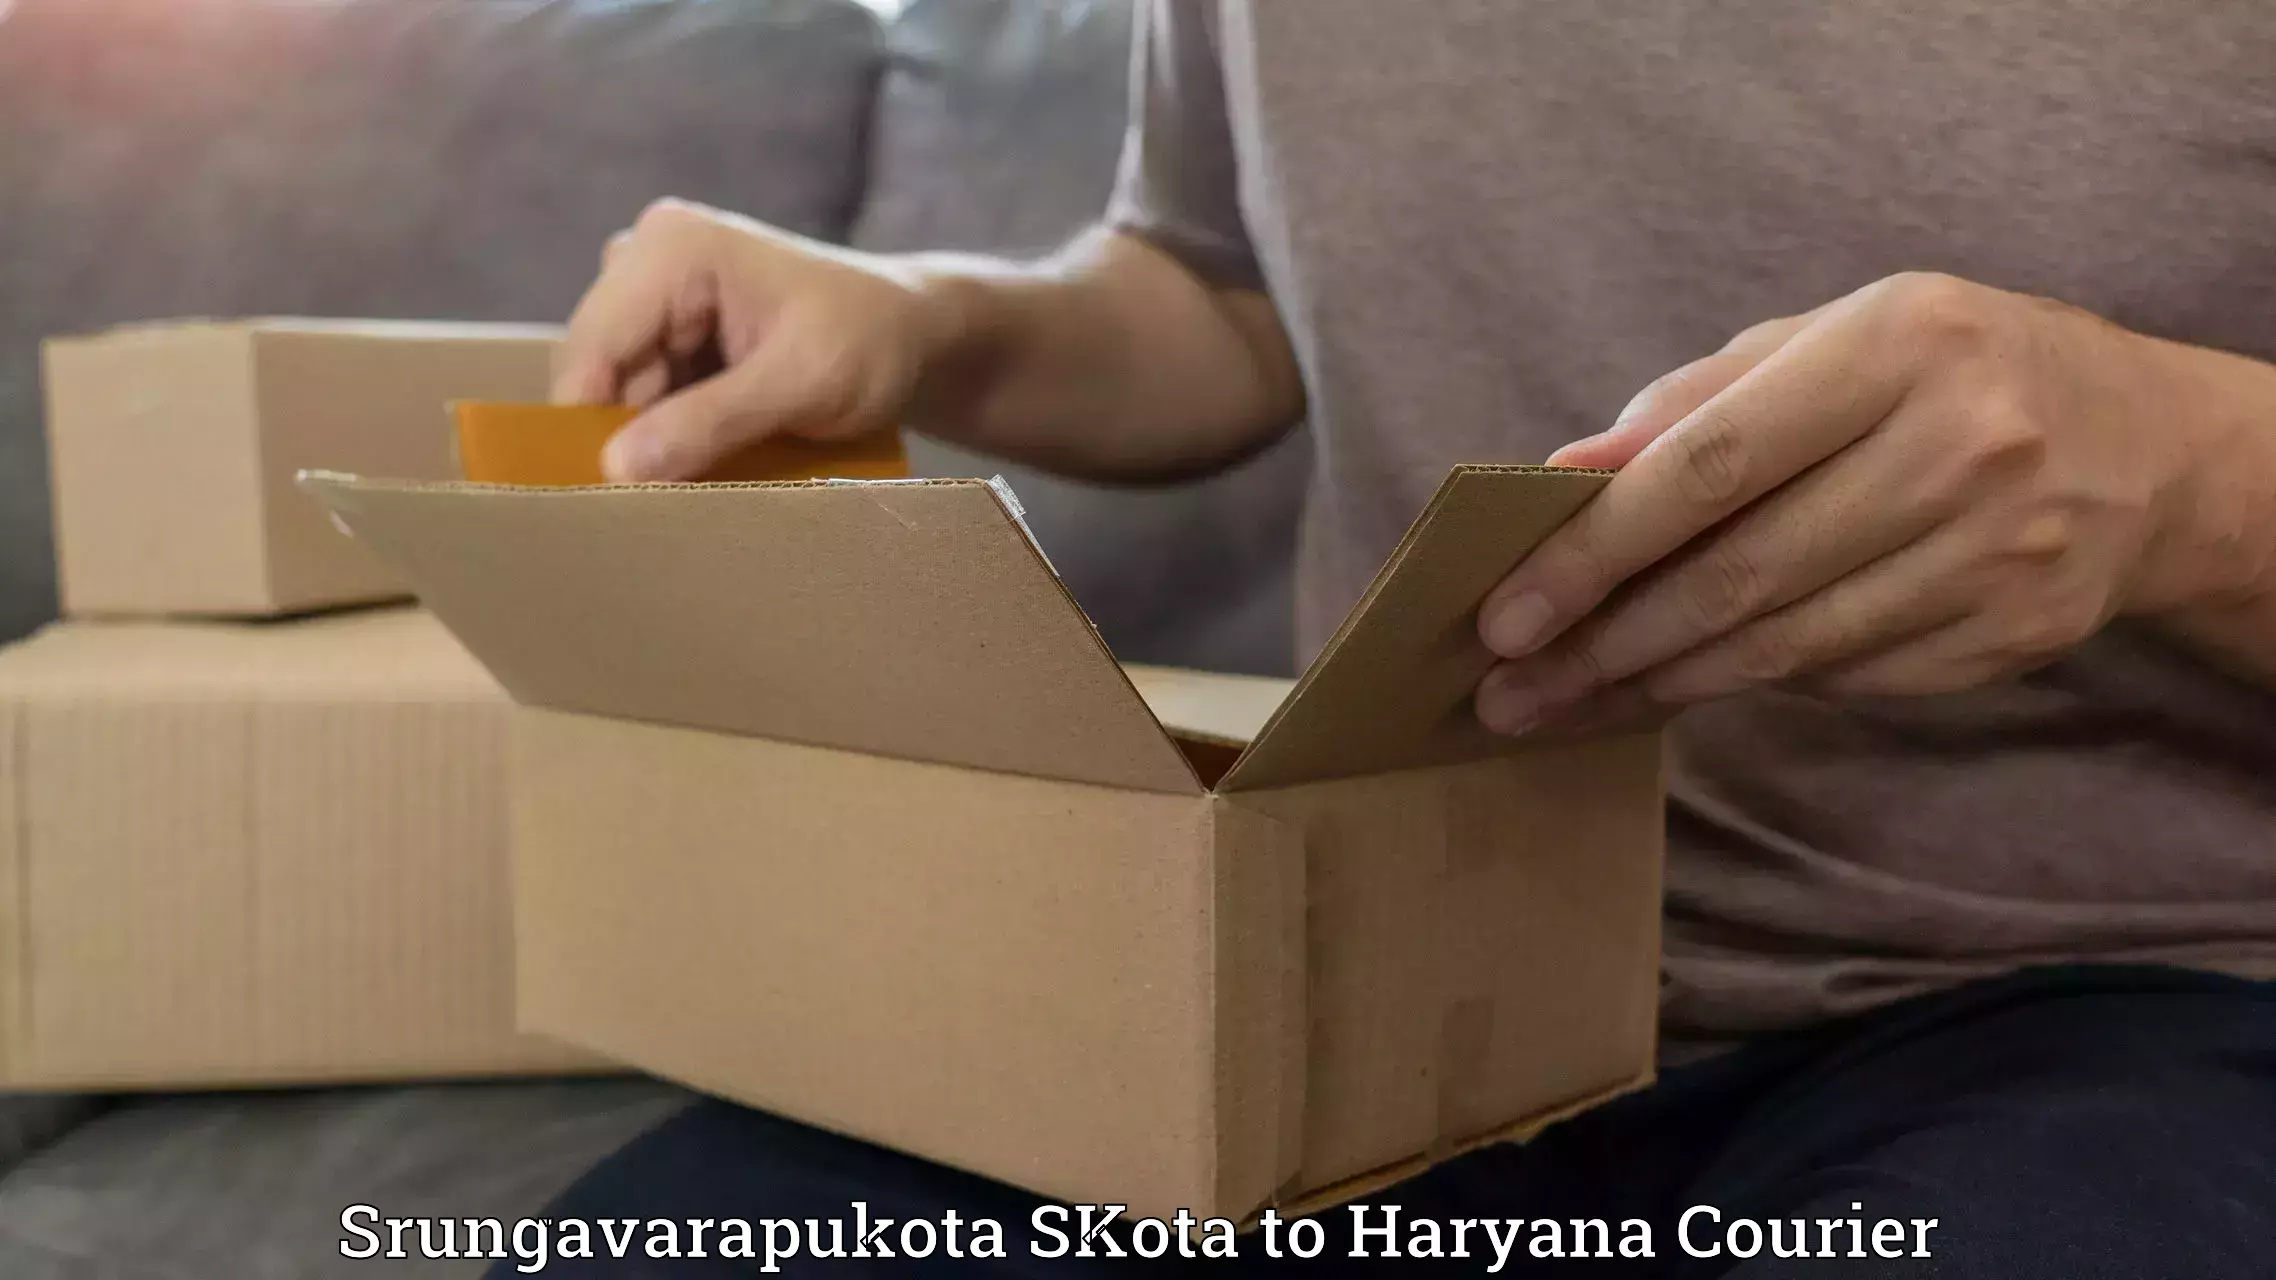 High-priority parcel service Srungavarapukota SKota to Siwani